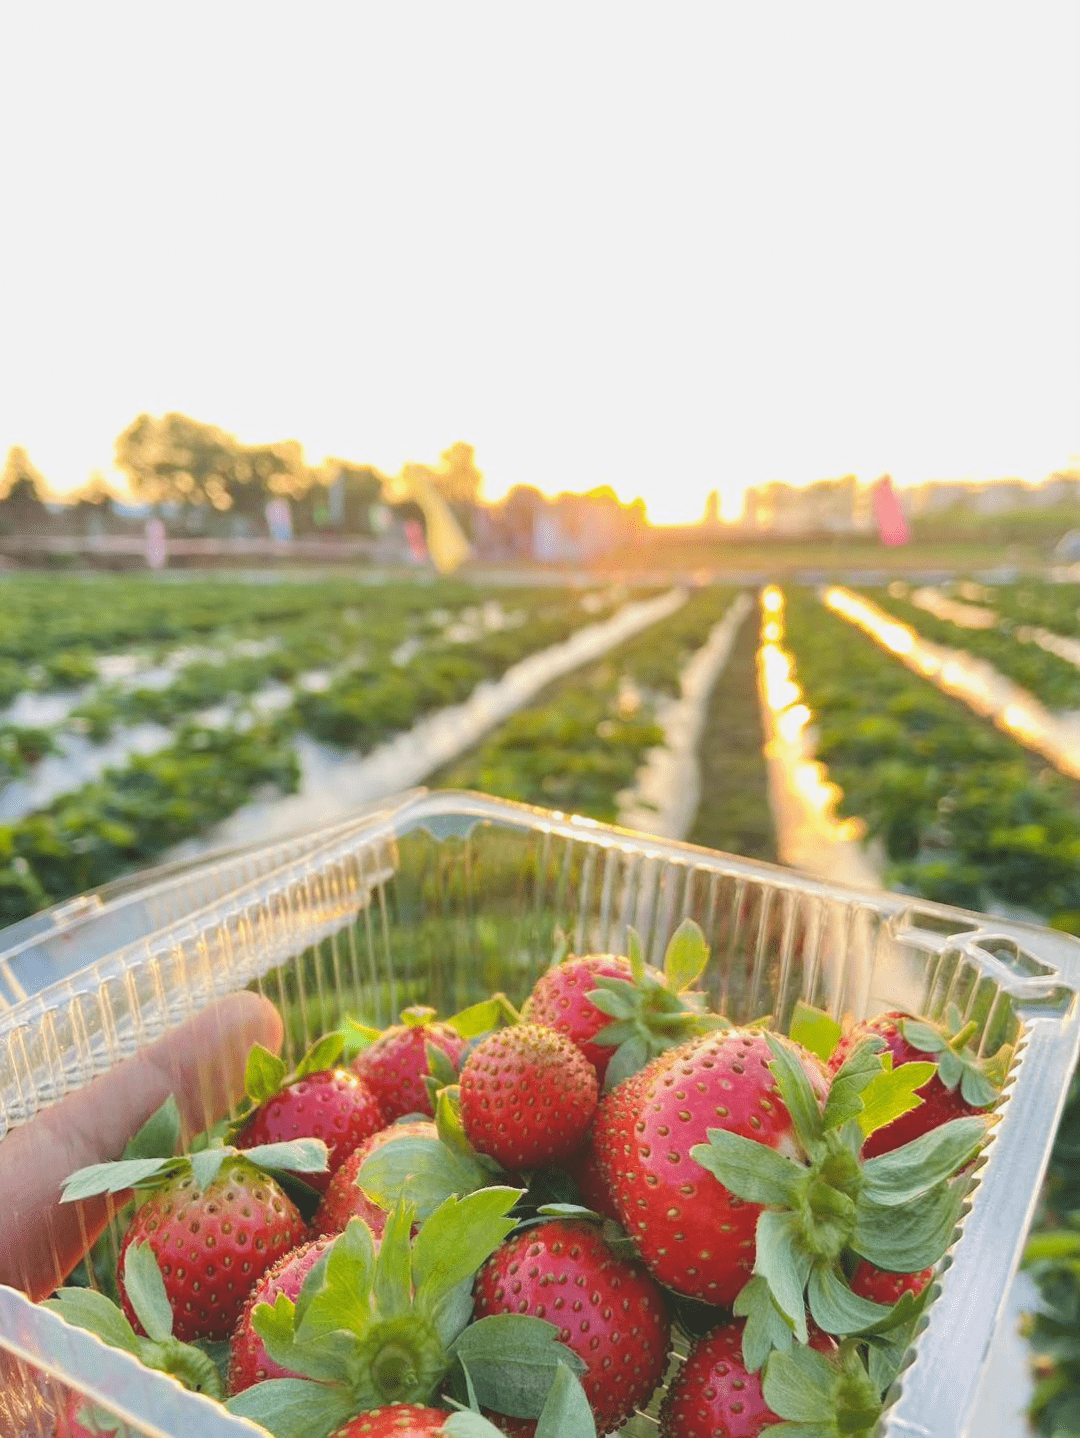 甜蜜暴击!又双叒叕到了吃草莓的季节,顺德多家草莓园等你来